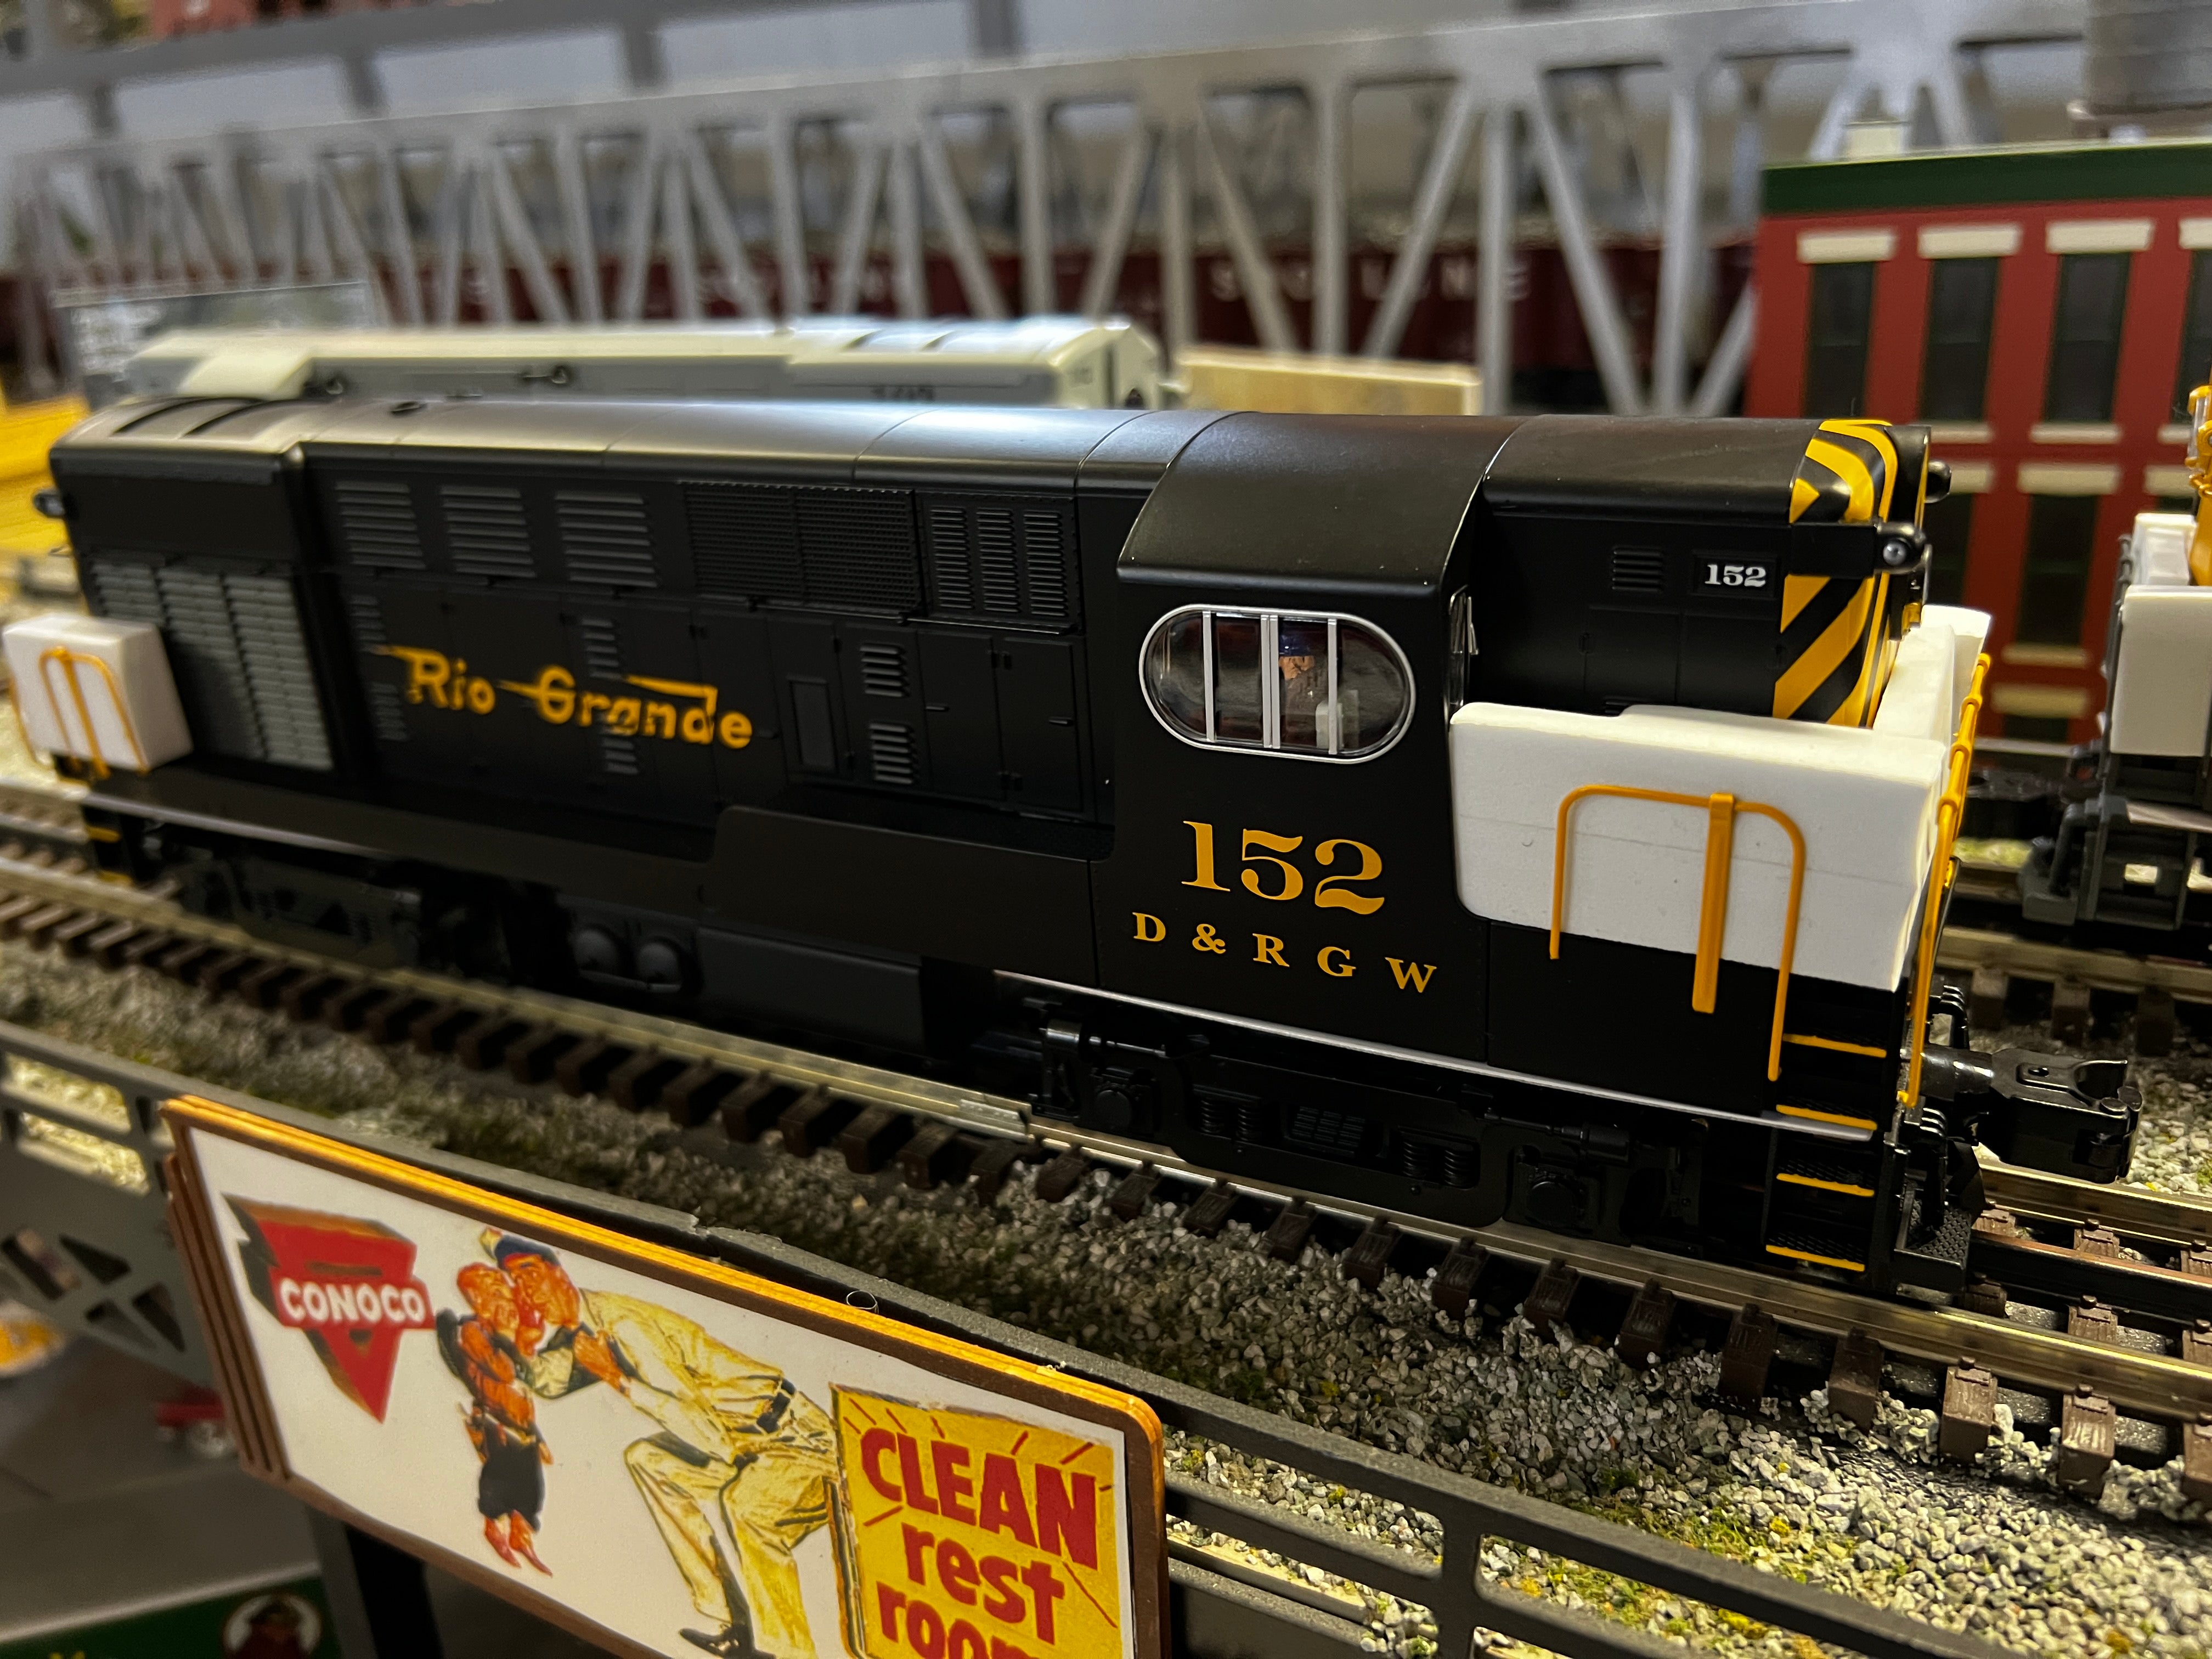 Lionel 2333271 - Legacy H15-44 Diesel Locomotive "Rio Grande" #151